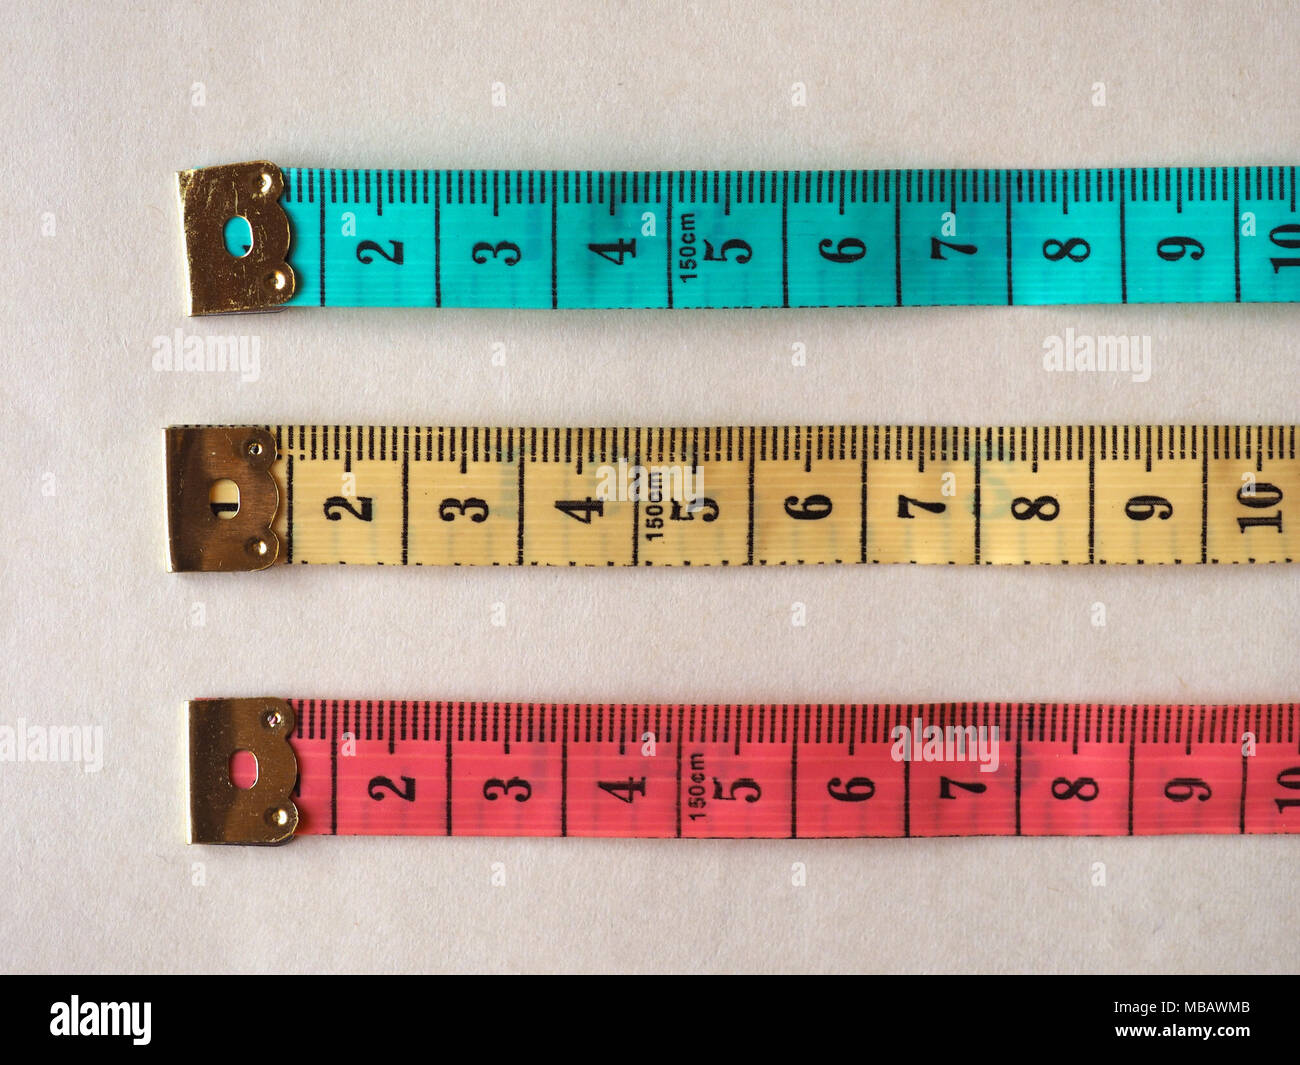 applaus Algemeen slijtage soft tailor meter ruler in metric units Stock Photo - Alamy